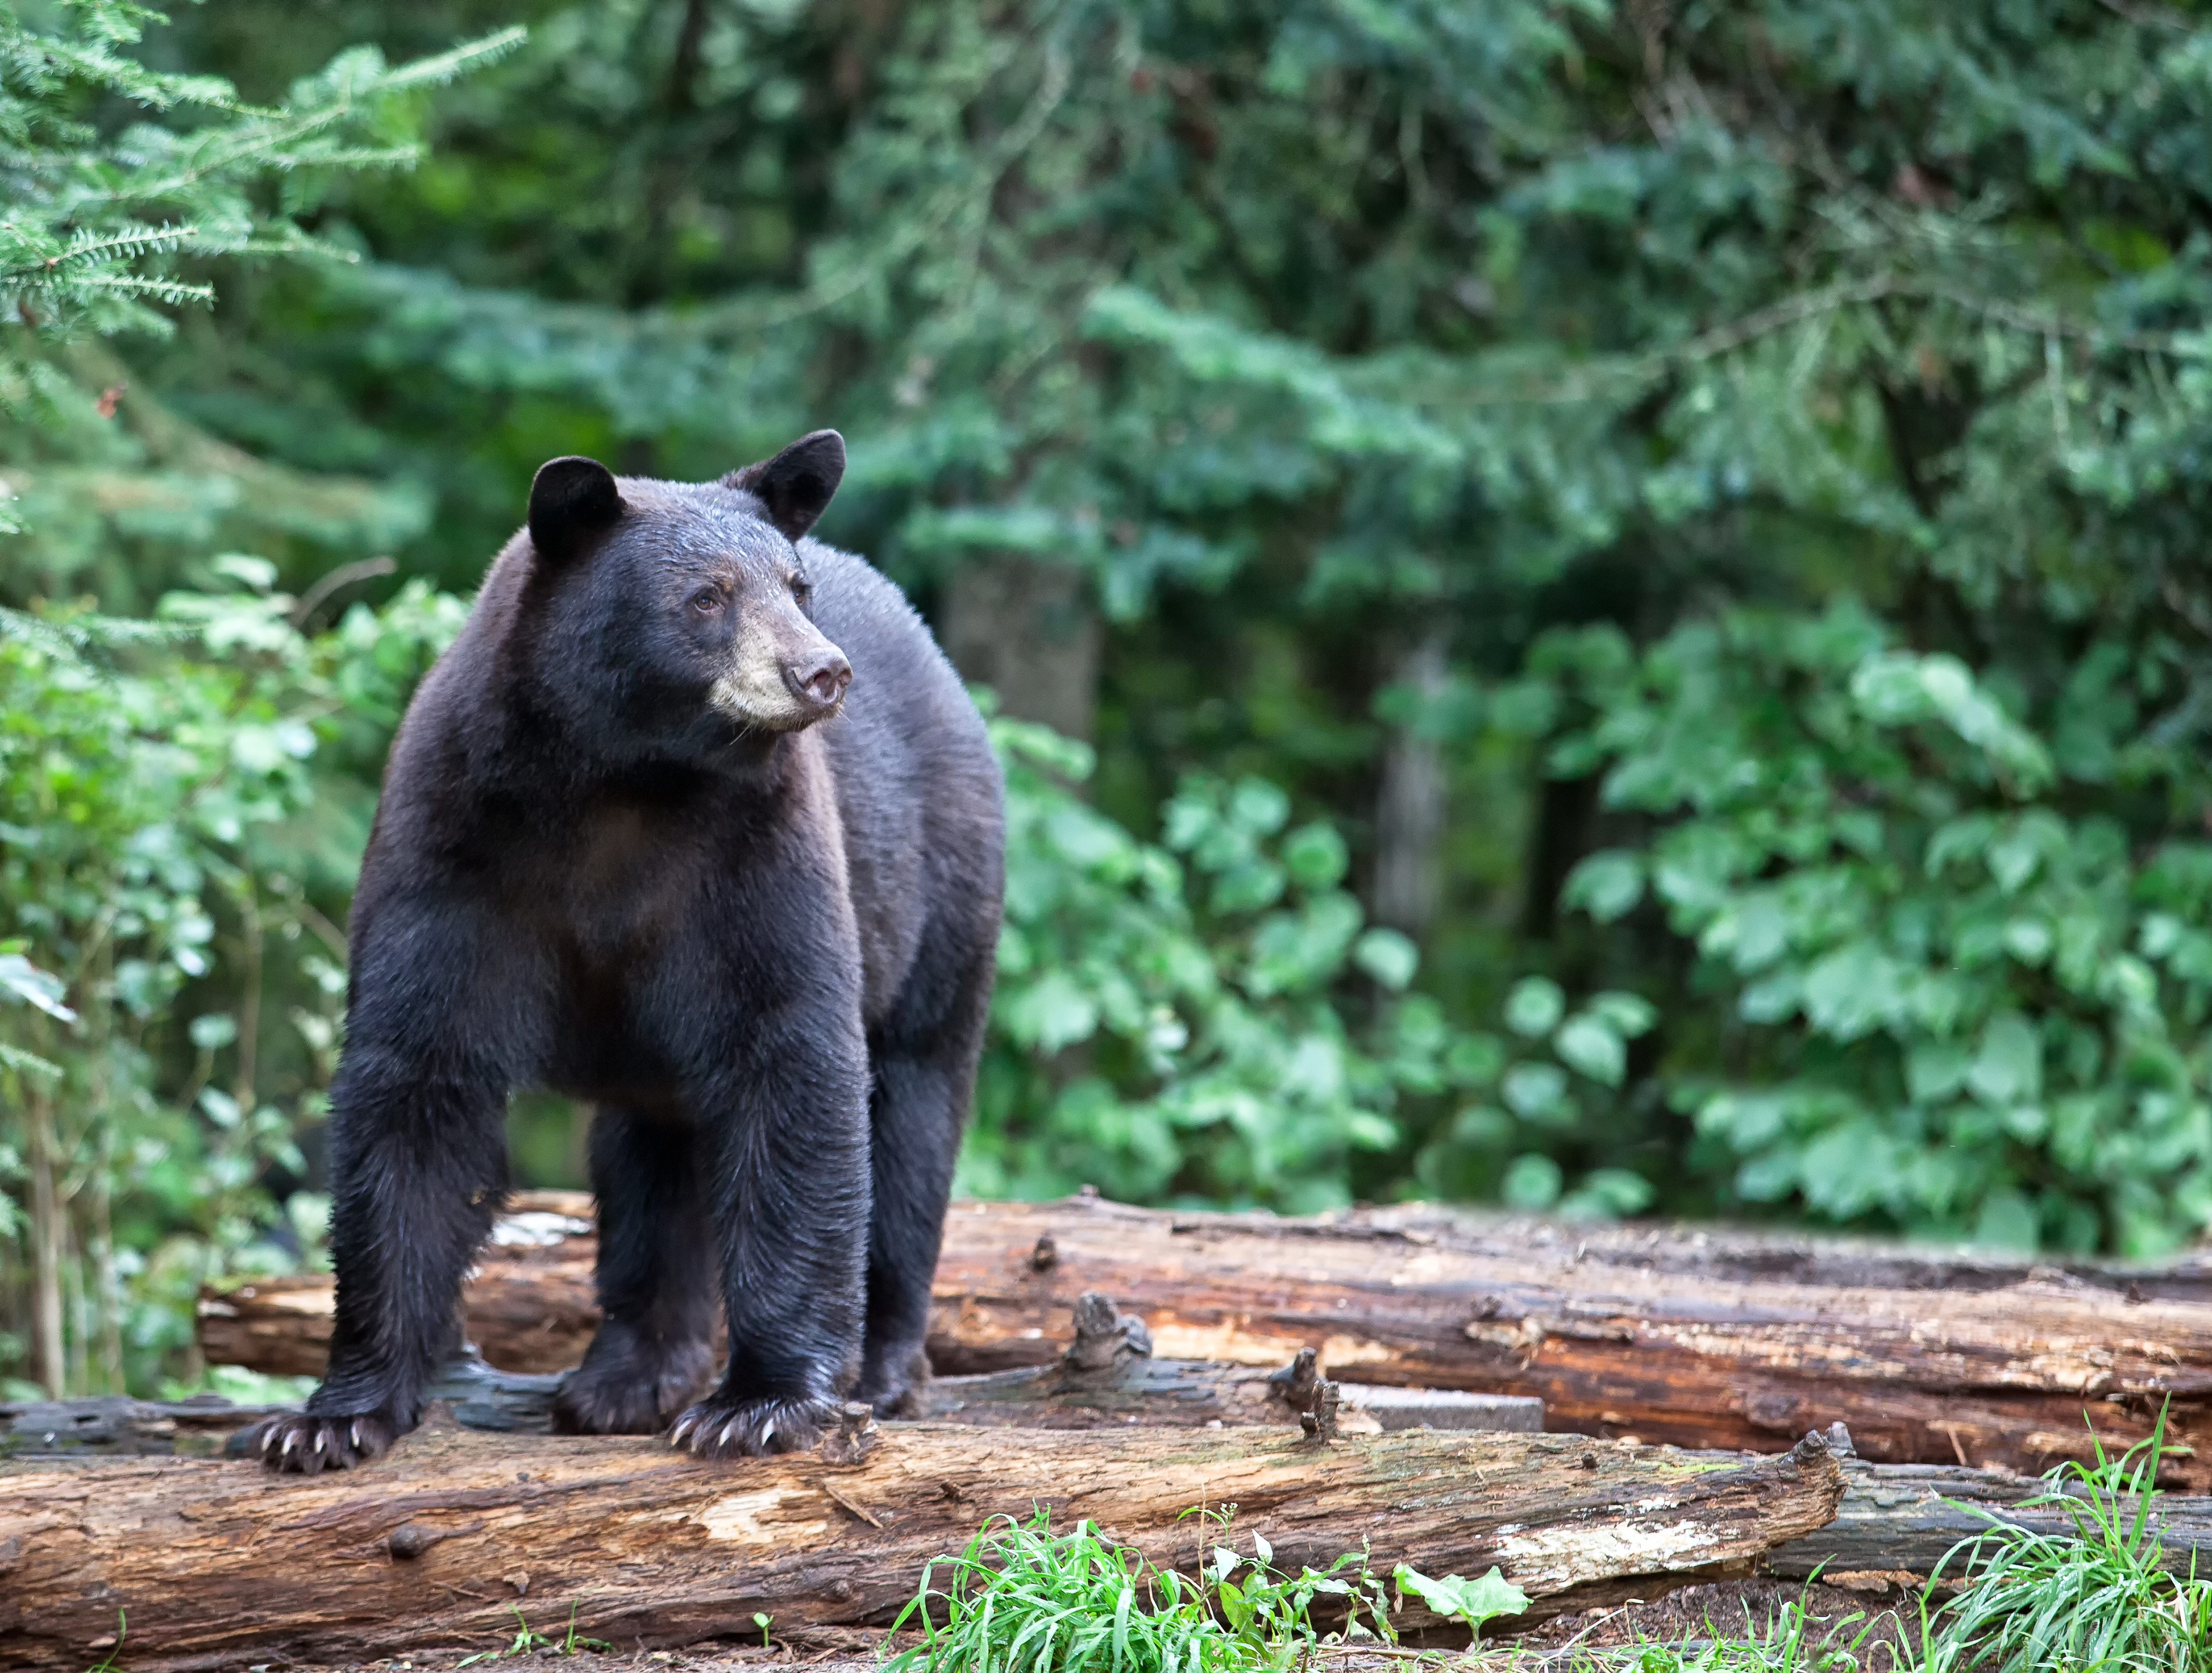 Медведь крупное млекопитающее. Американский медведь Барибал. Барибал Северной Америки. Чёрный медведь из Северной Америки. Американский черный медведь Барибал.